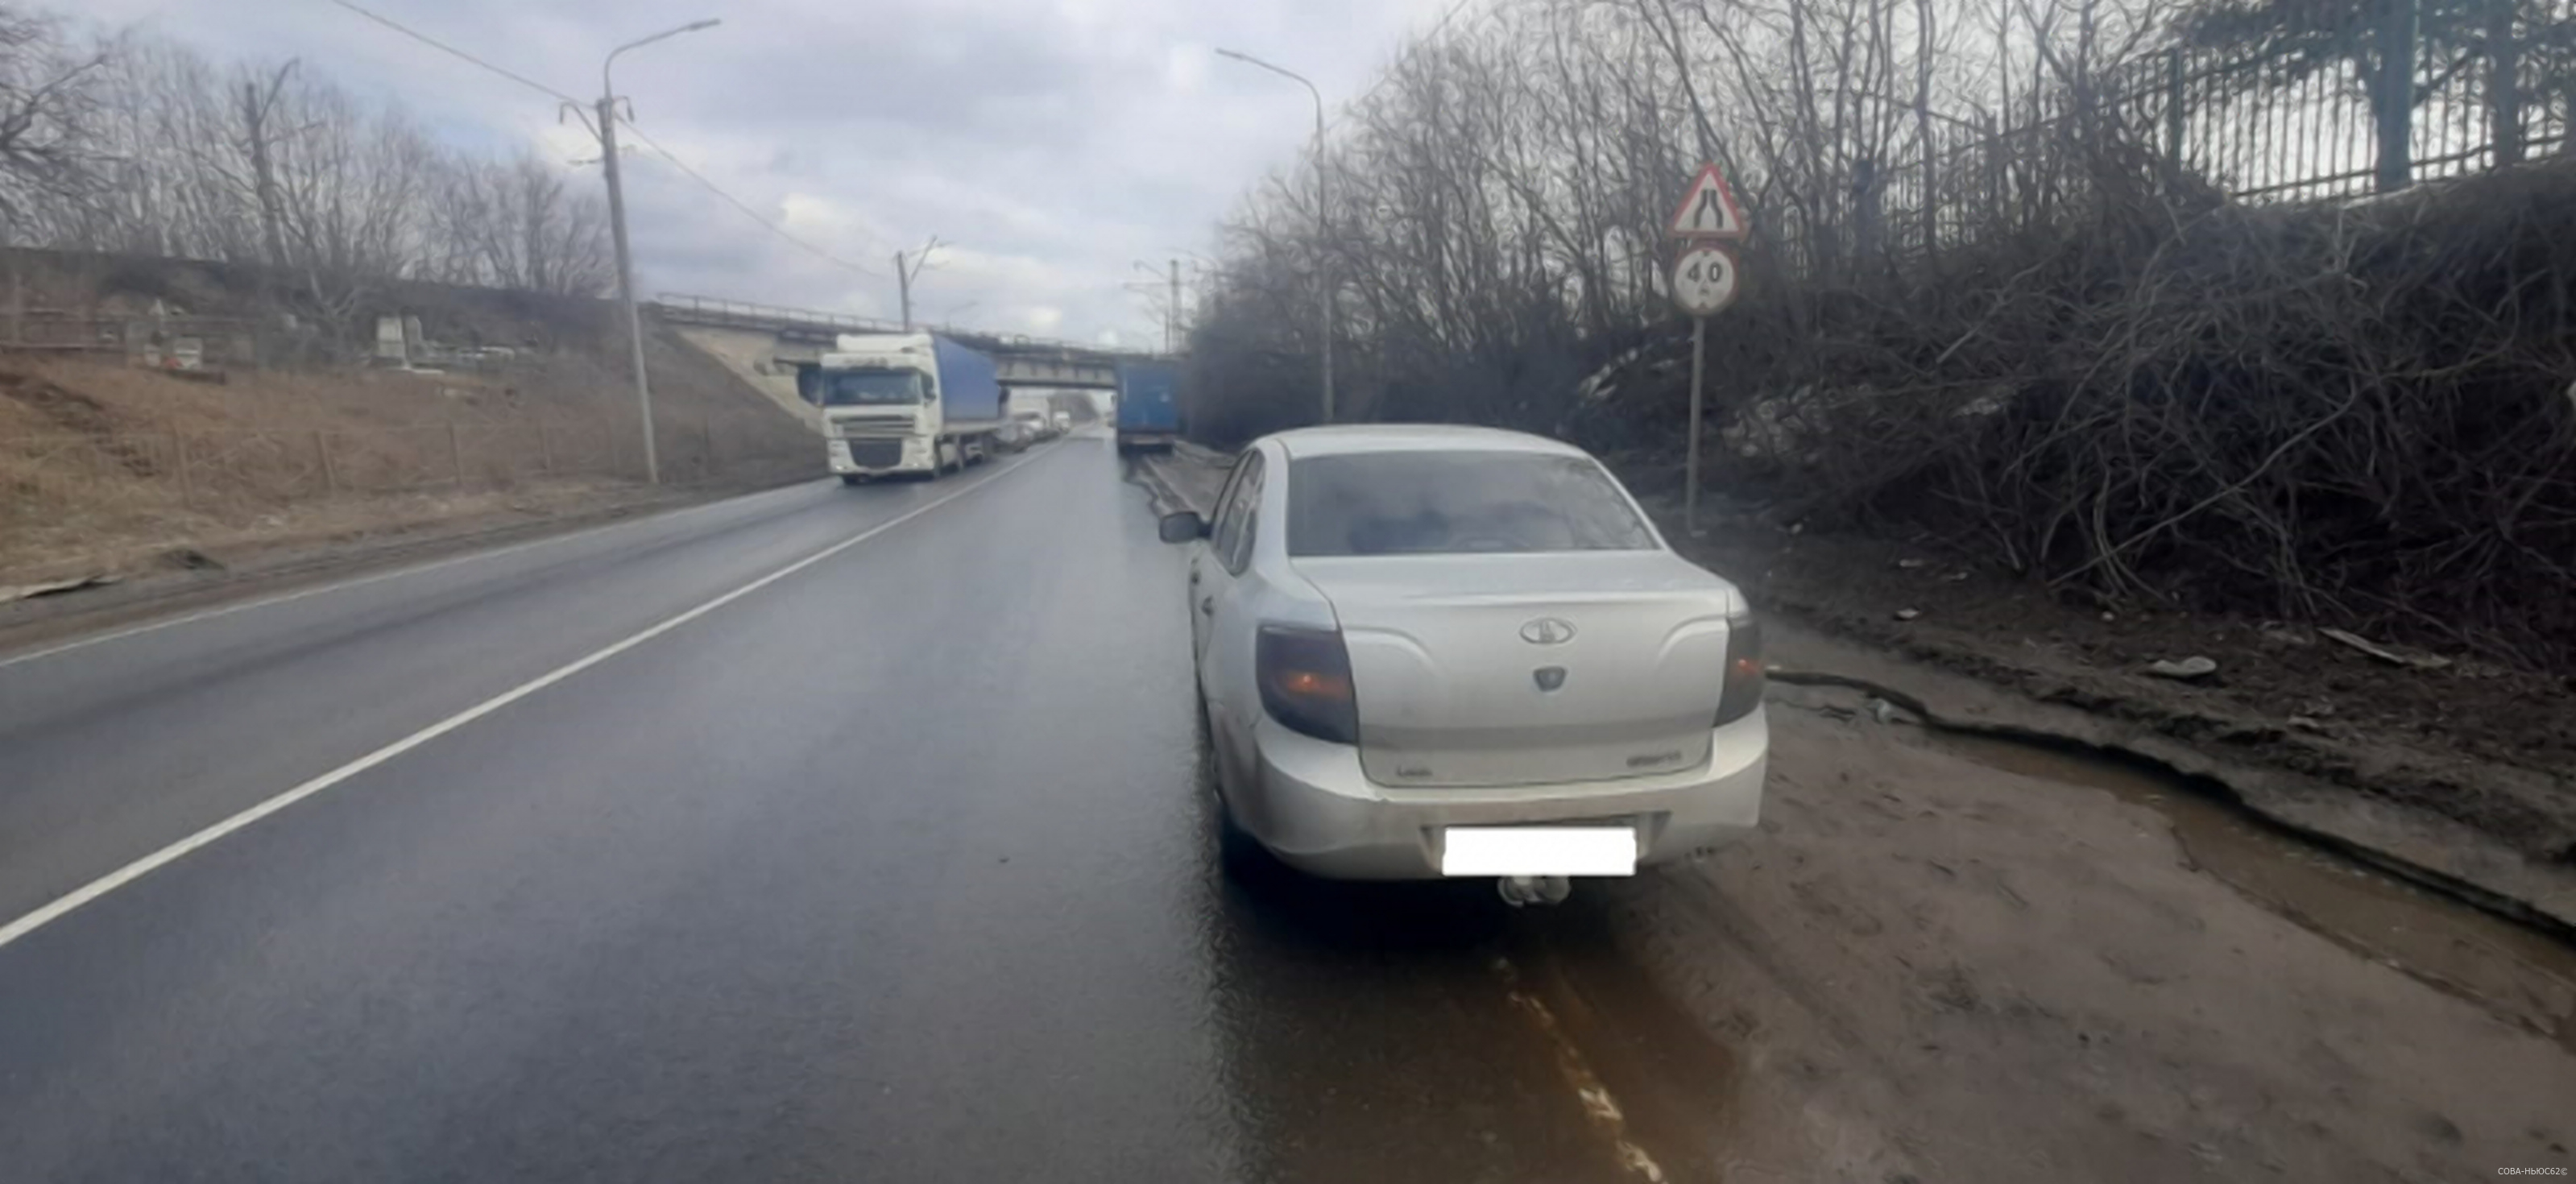 В черте Рязани произошло ДТП с фурой и легковым авто